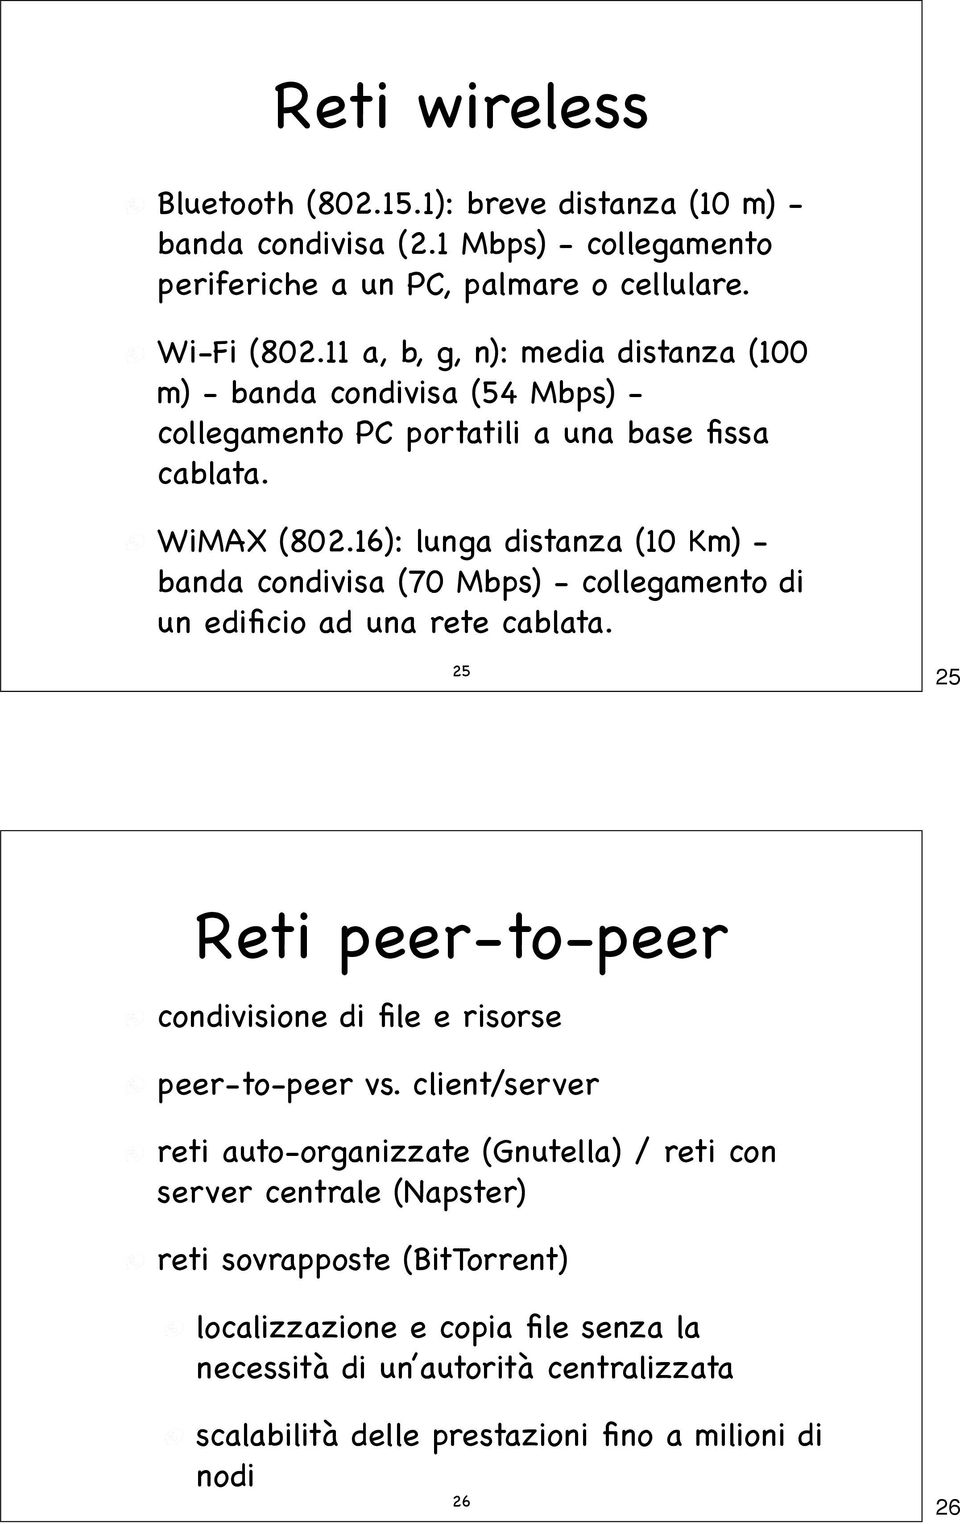 16): lunga distanza (10 Km) - banda condivisa (70 Mbps) - collegamento di un edificio ad una rete cablata. 25 25 Reti peer-to-peer condivisione di file e risorse peer-to-peer vs.